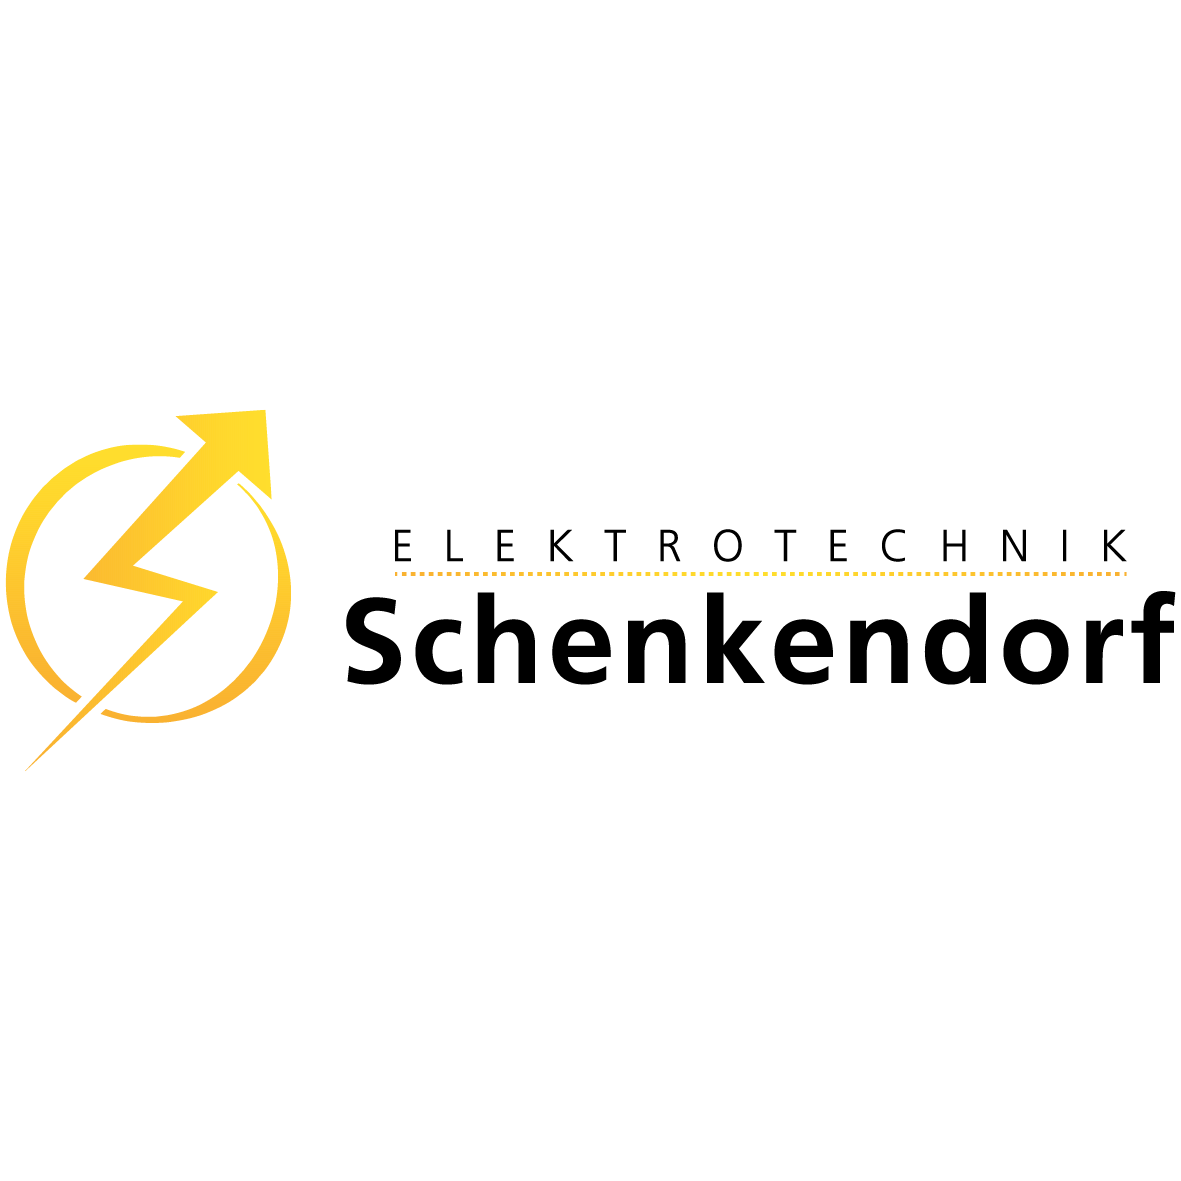 Elektrotechnik Schenkendorf GmbH in Remscheid - Logo